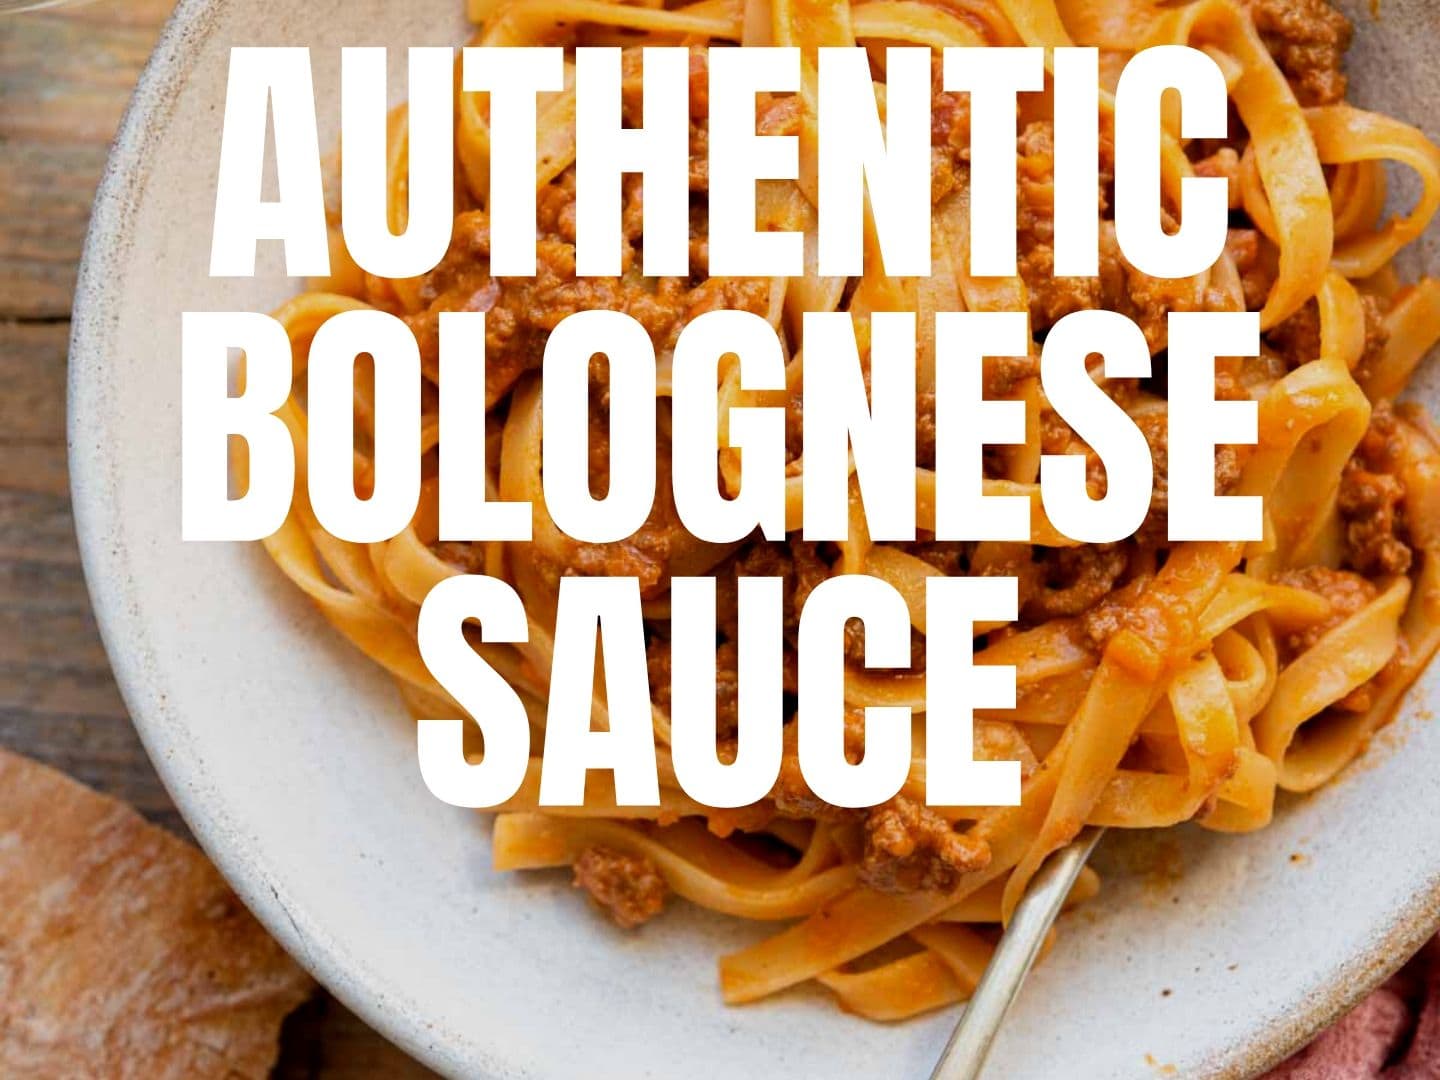 Recette - Sauce bolognaise : l'authentique ragù alla bolognese